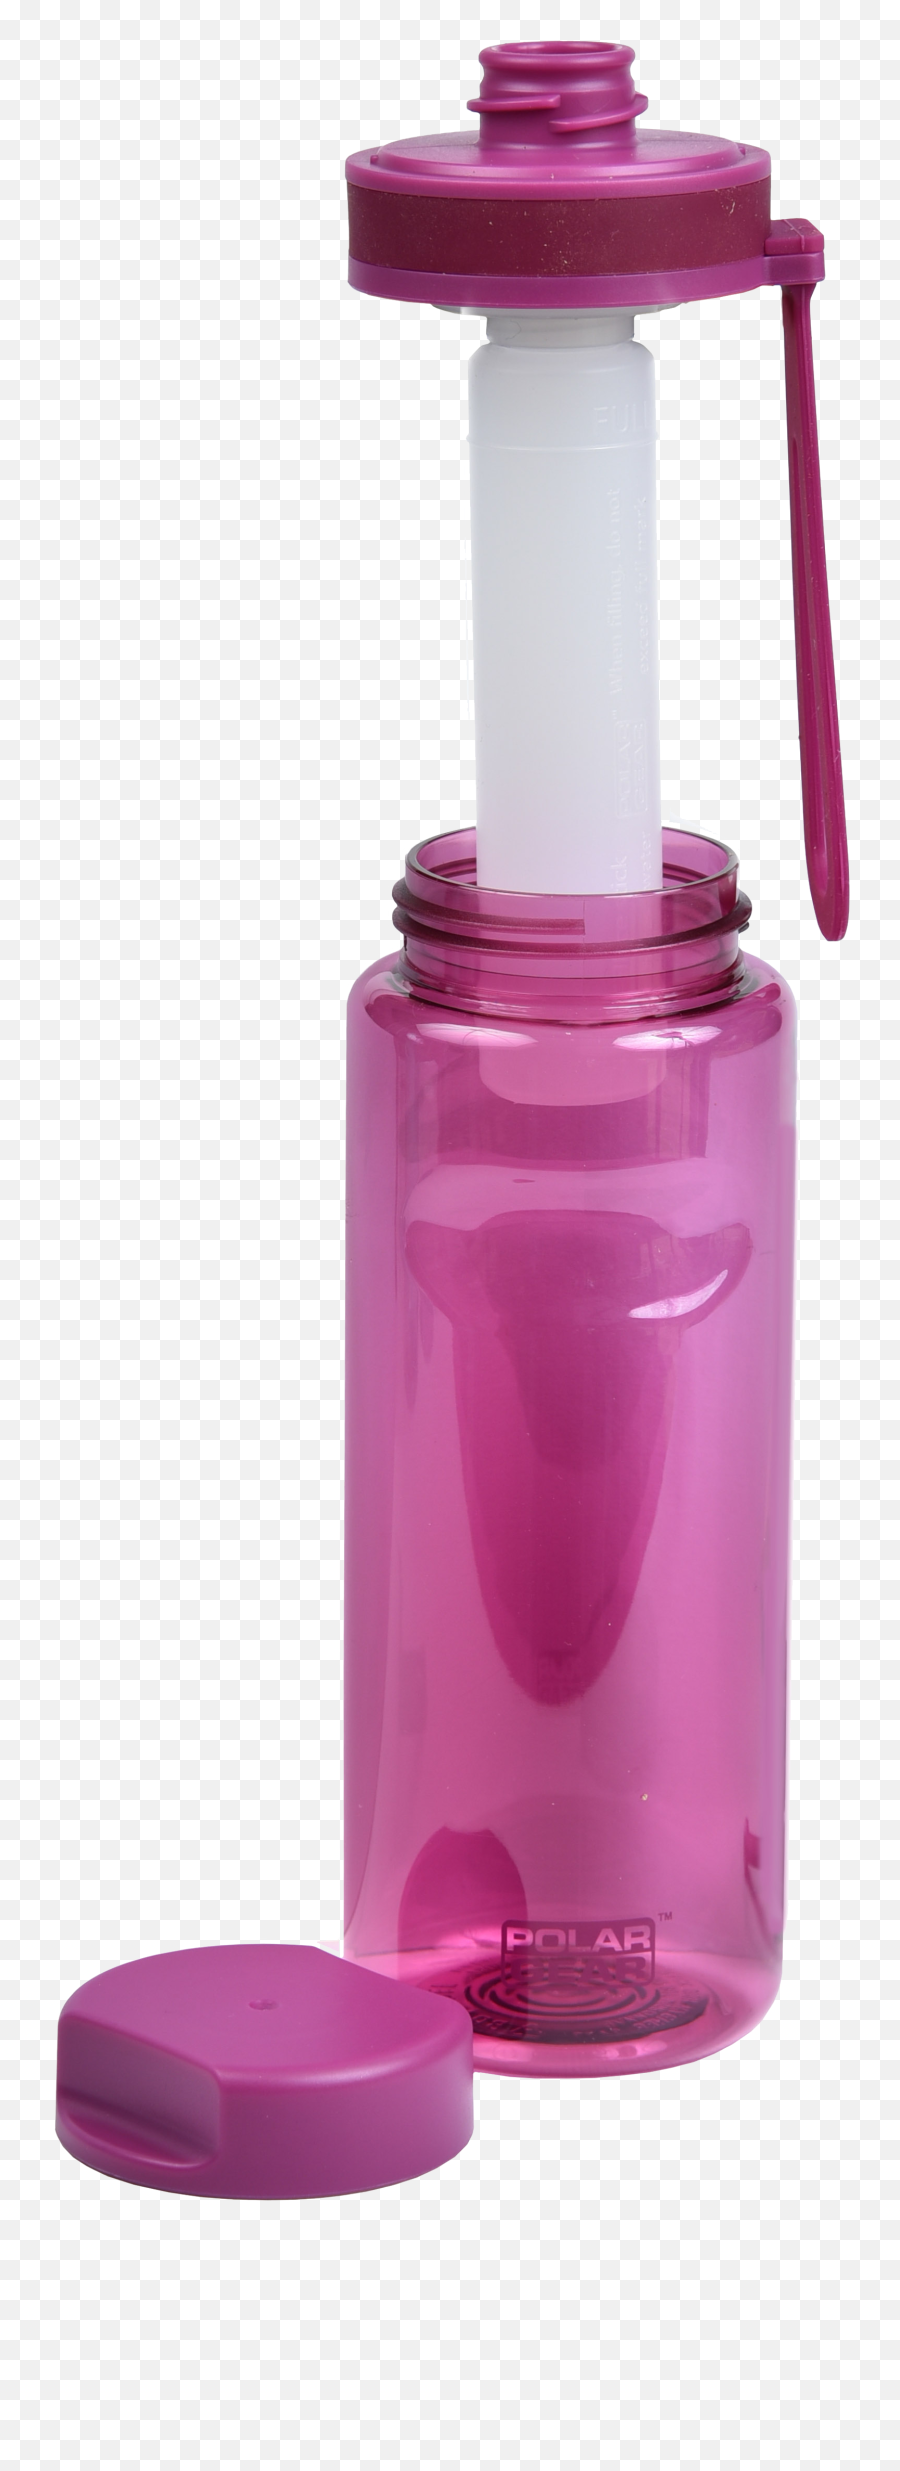 Polar Gear Aqua Cool Tritan Bottle - Empty Emoji,Cool Gear Emoji Water Bottle